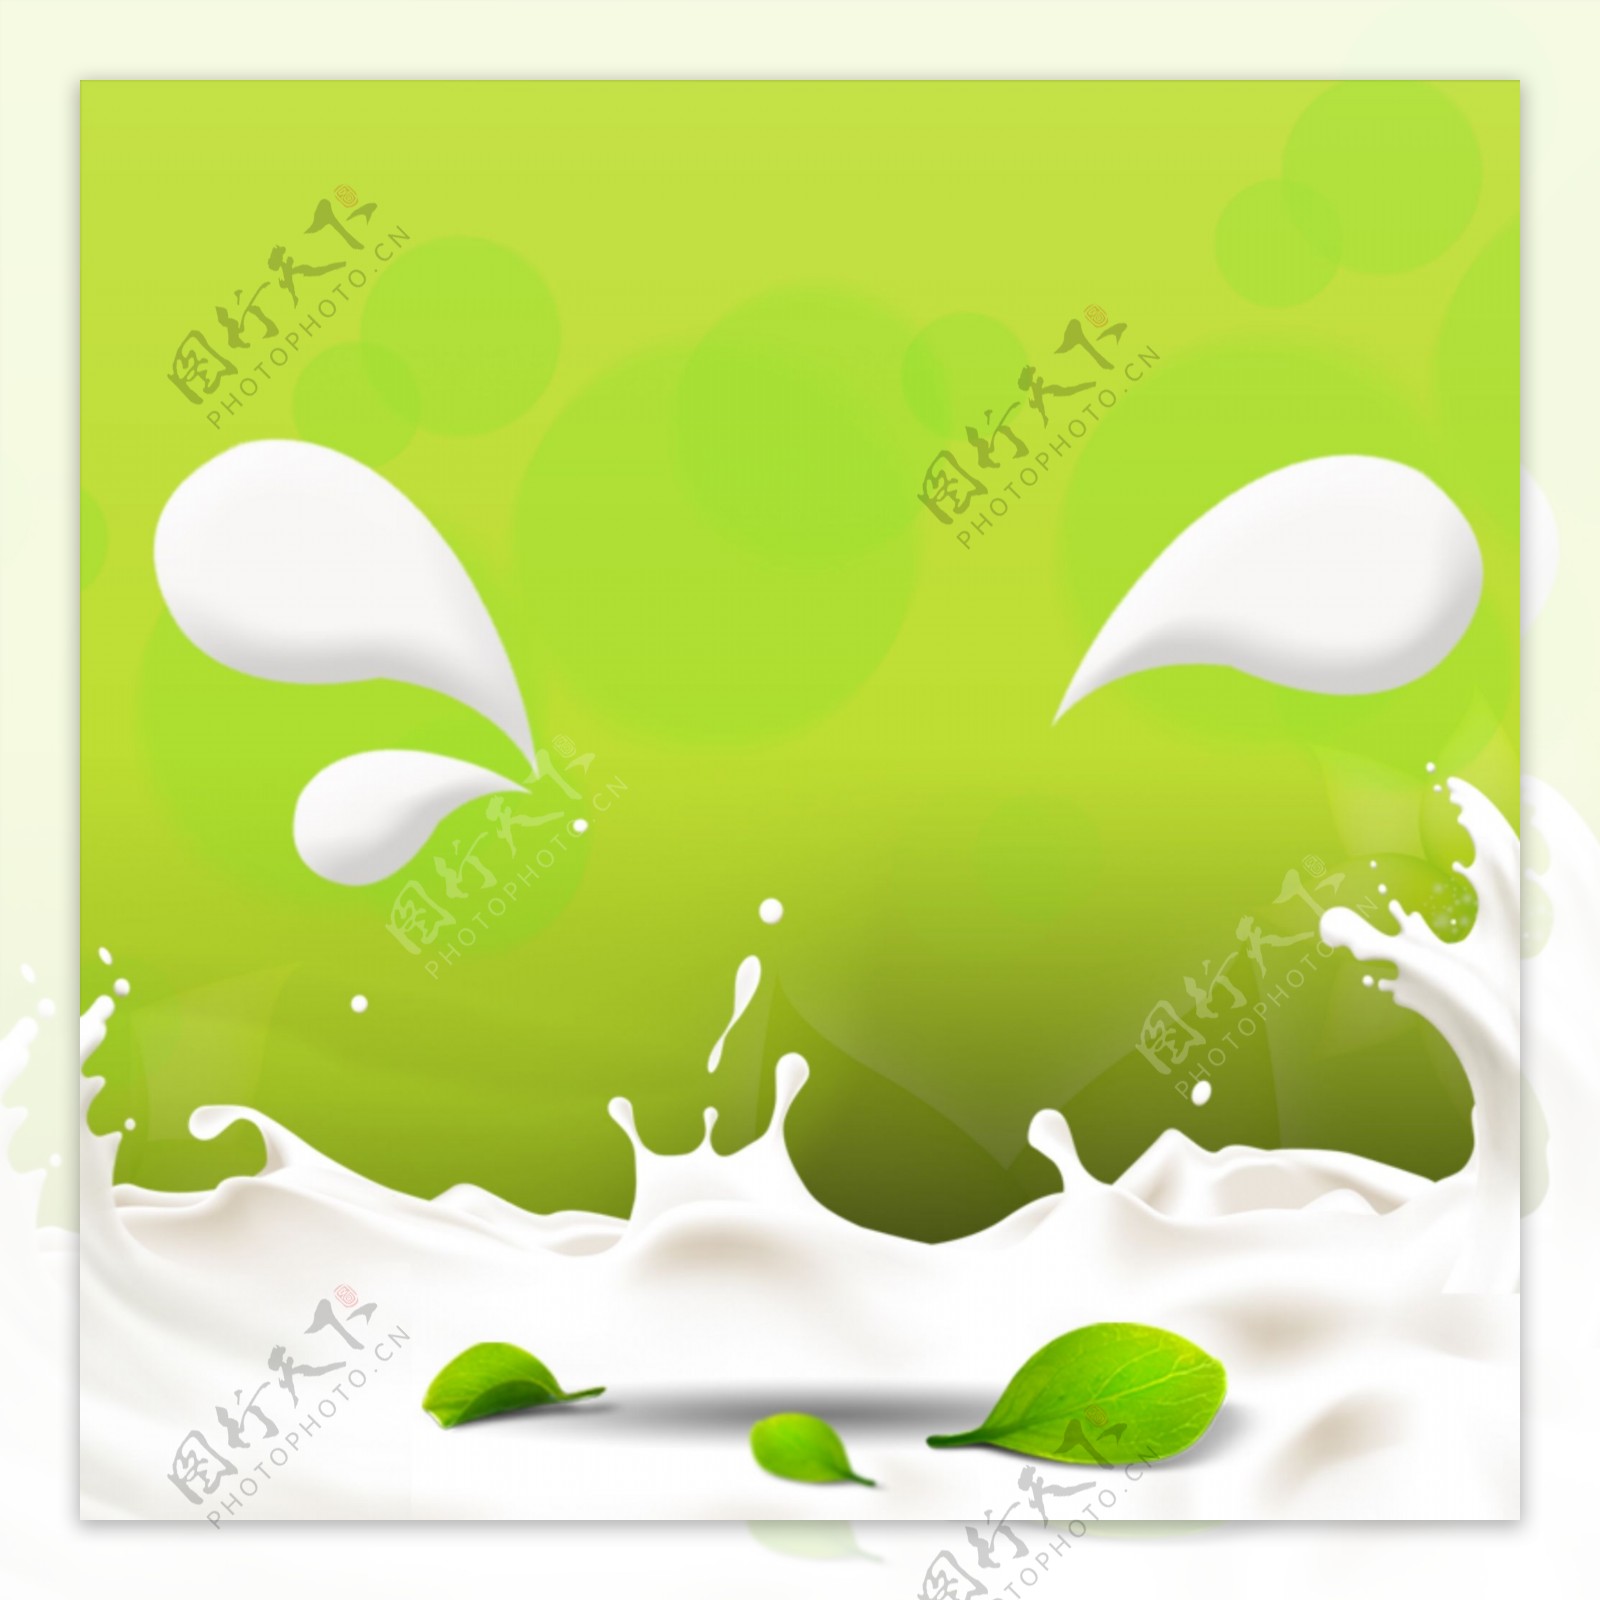 绿色牛奶护肤品化妆品主图背景